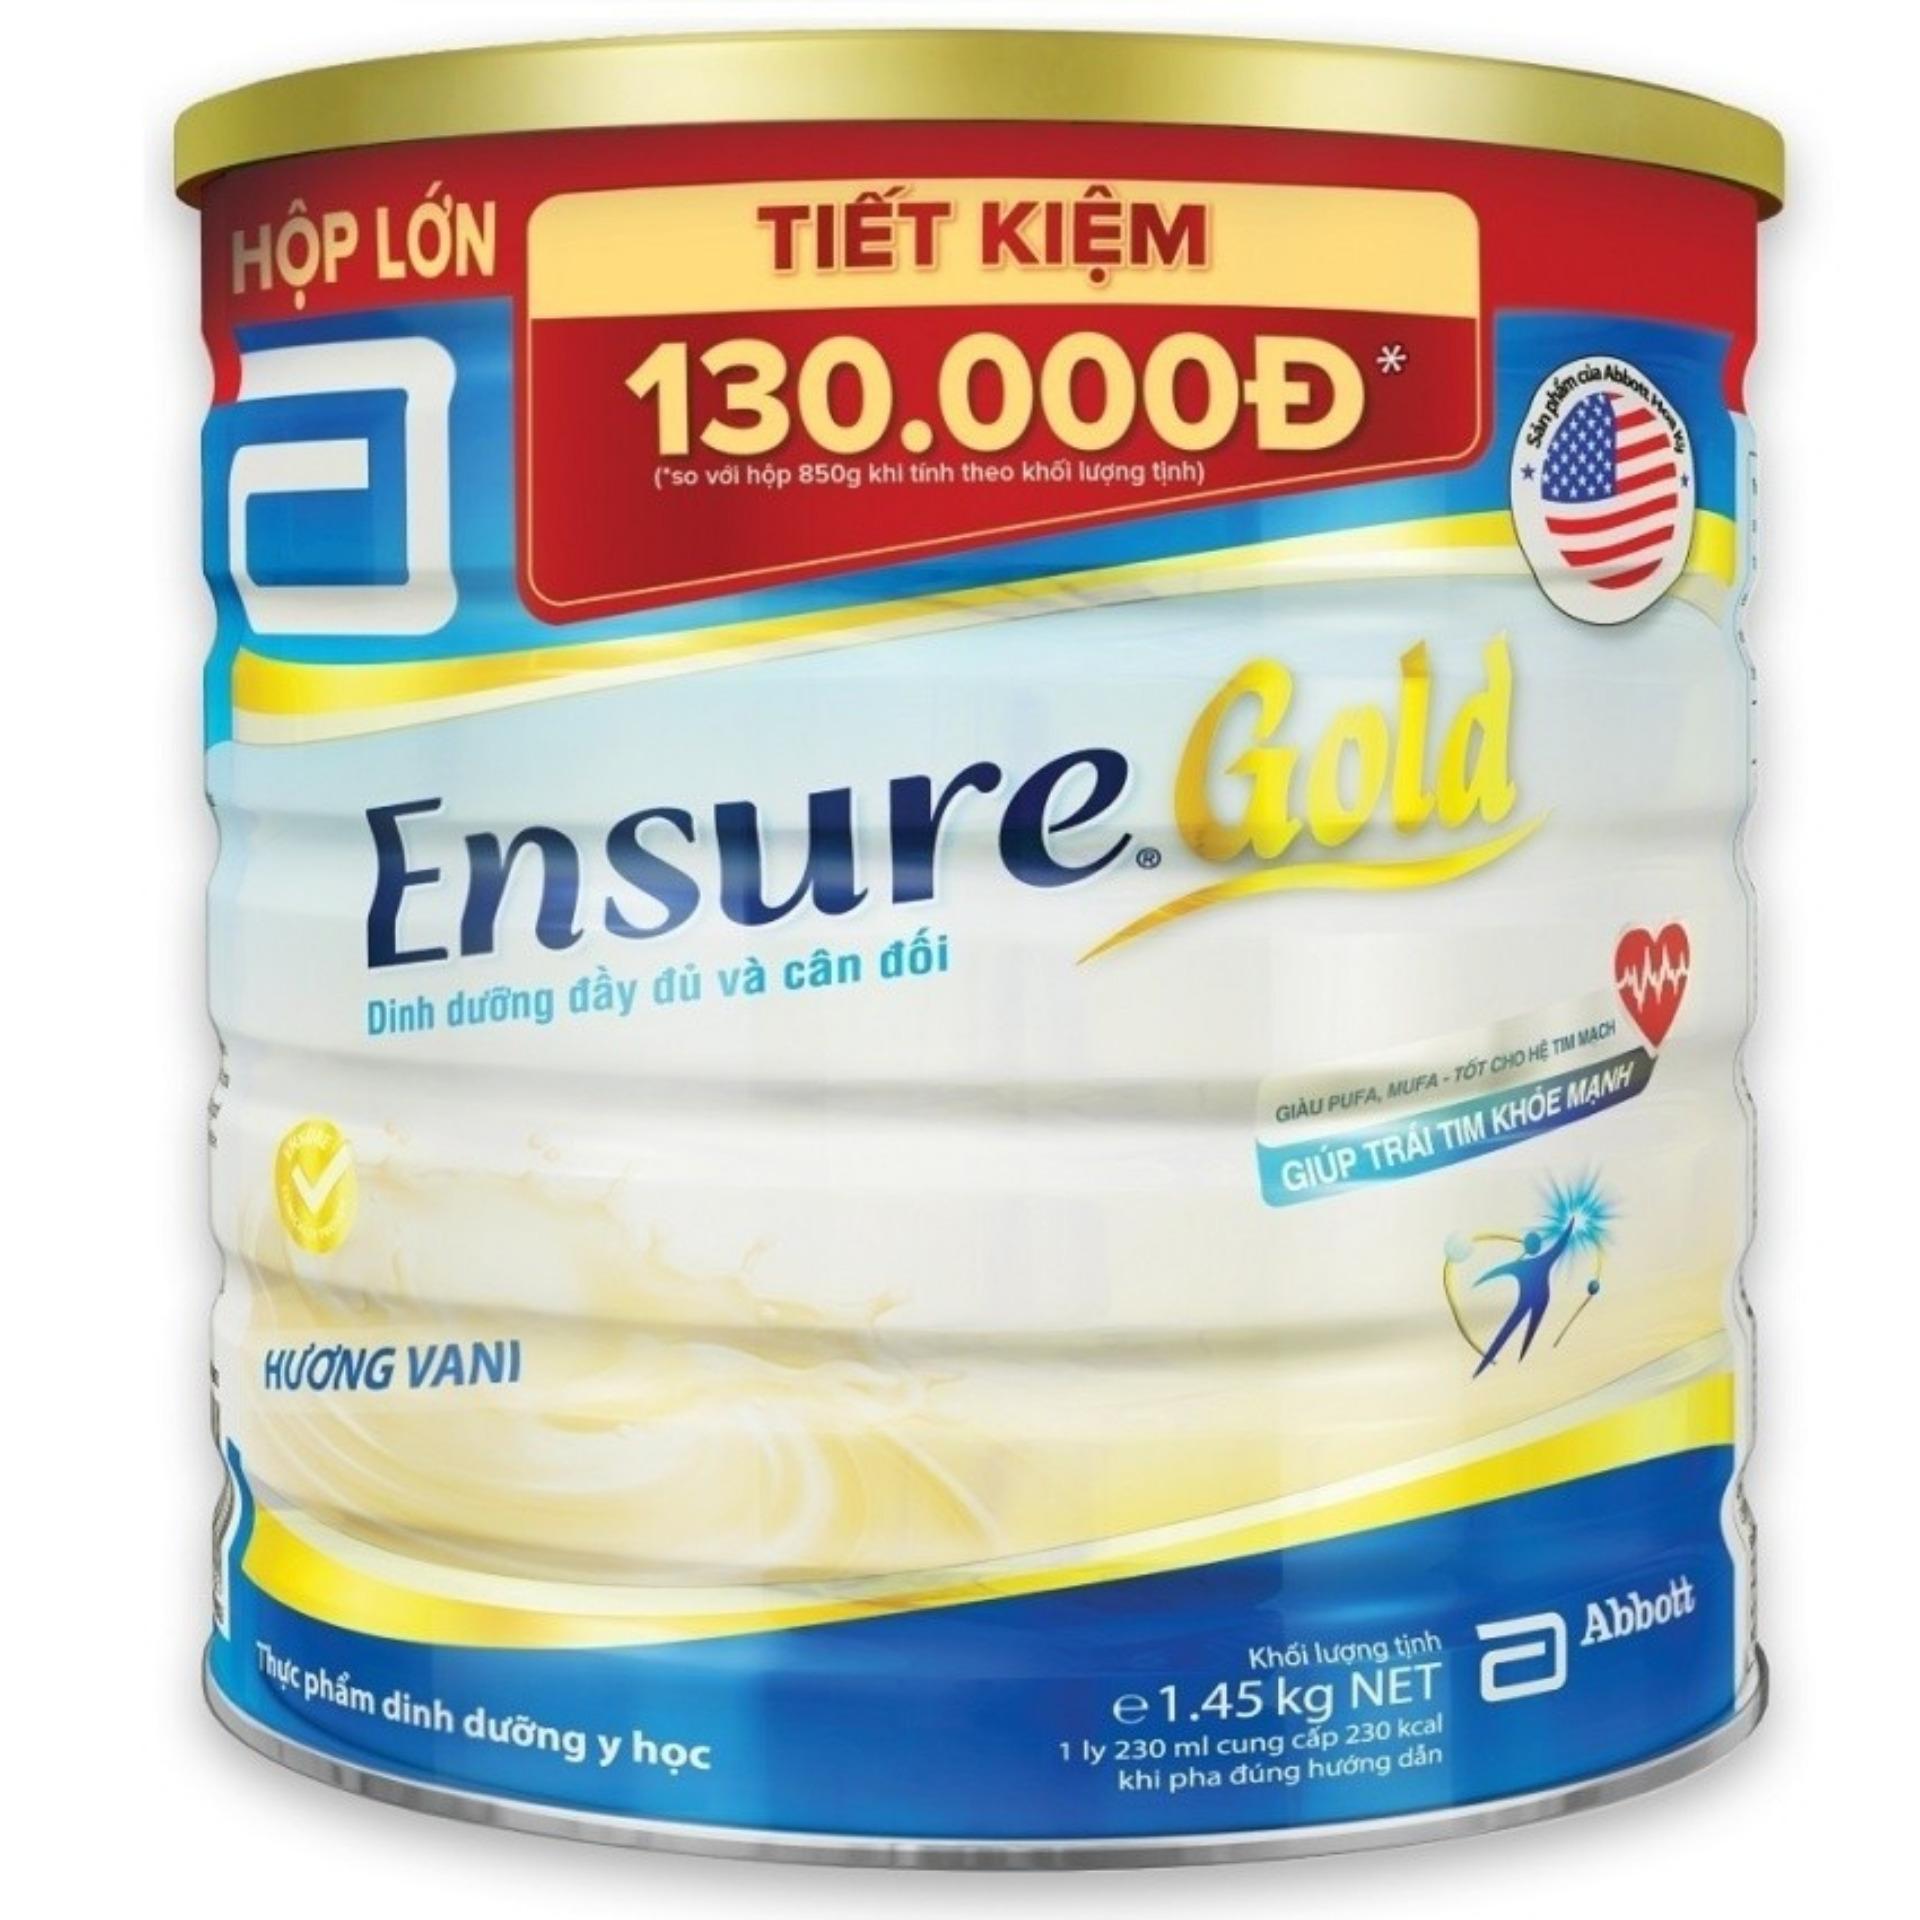 Sữa Abbott Ensure Gold hương vani 1.45kg (hộp thiếc)